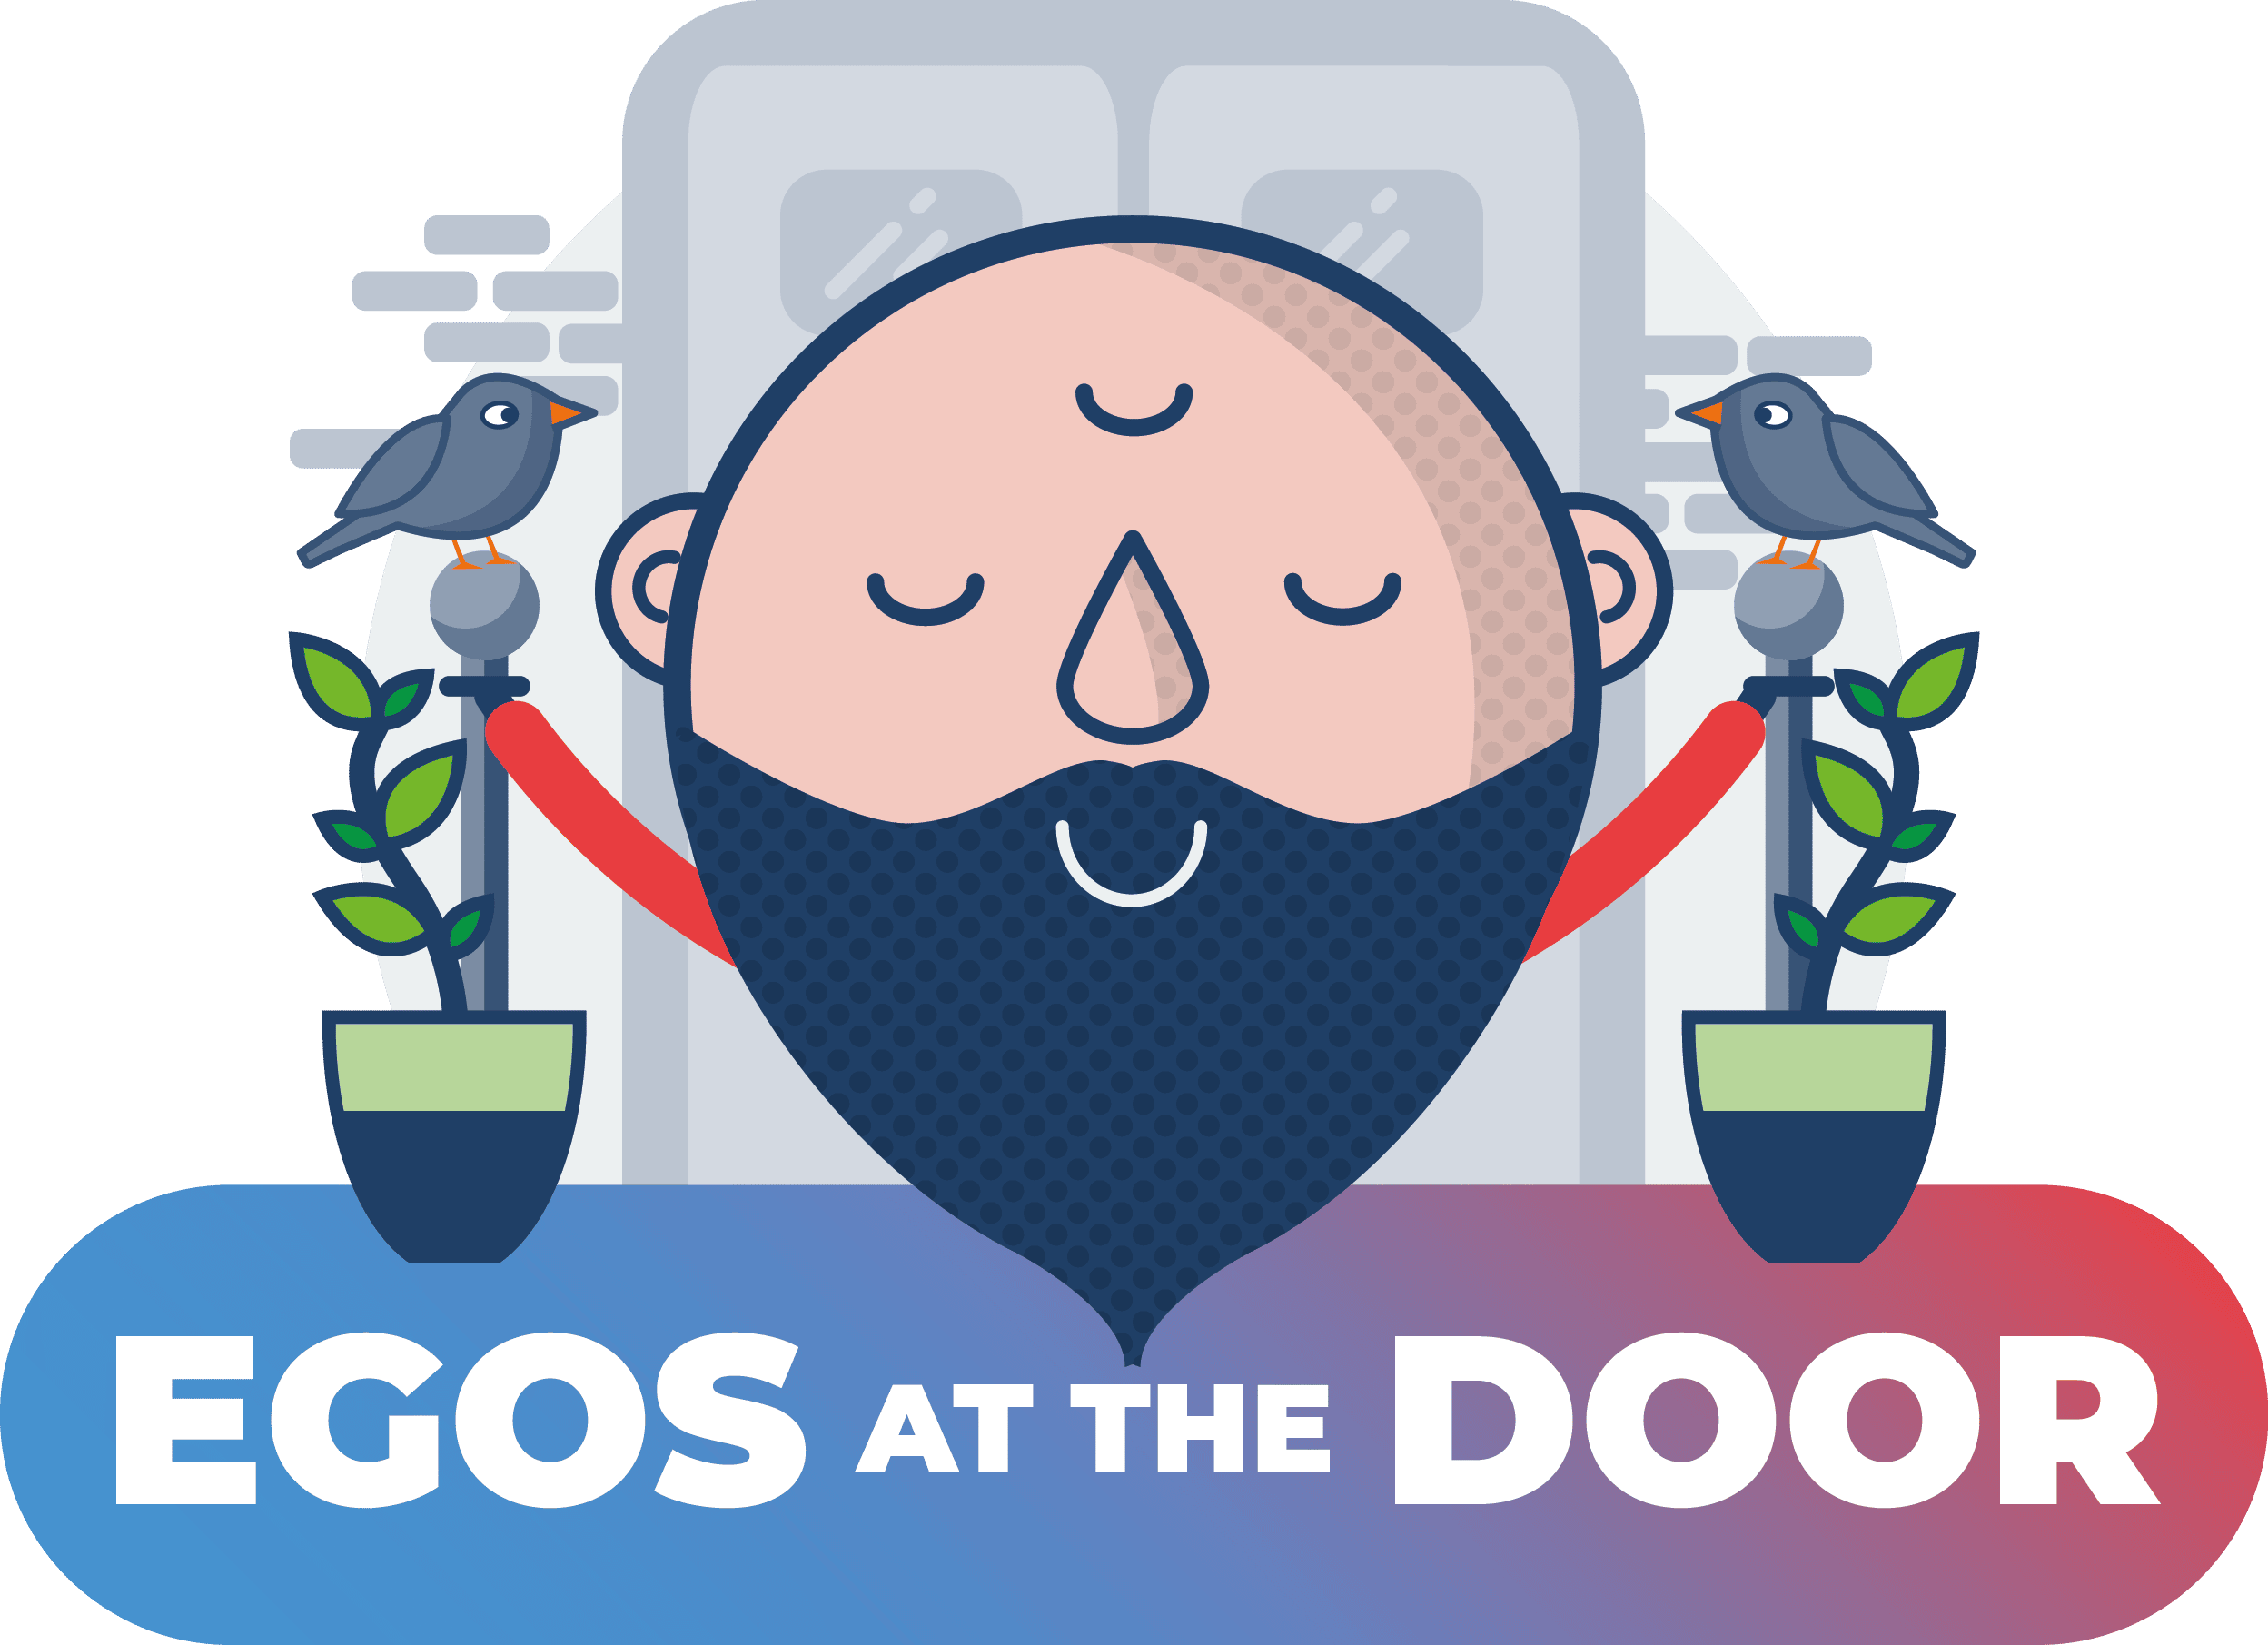 egos at the door